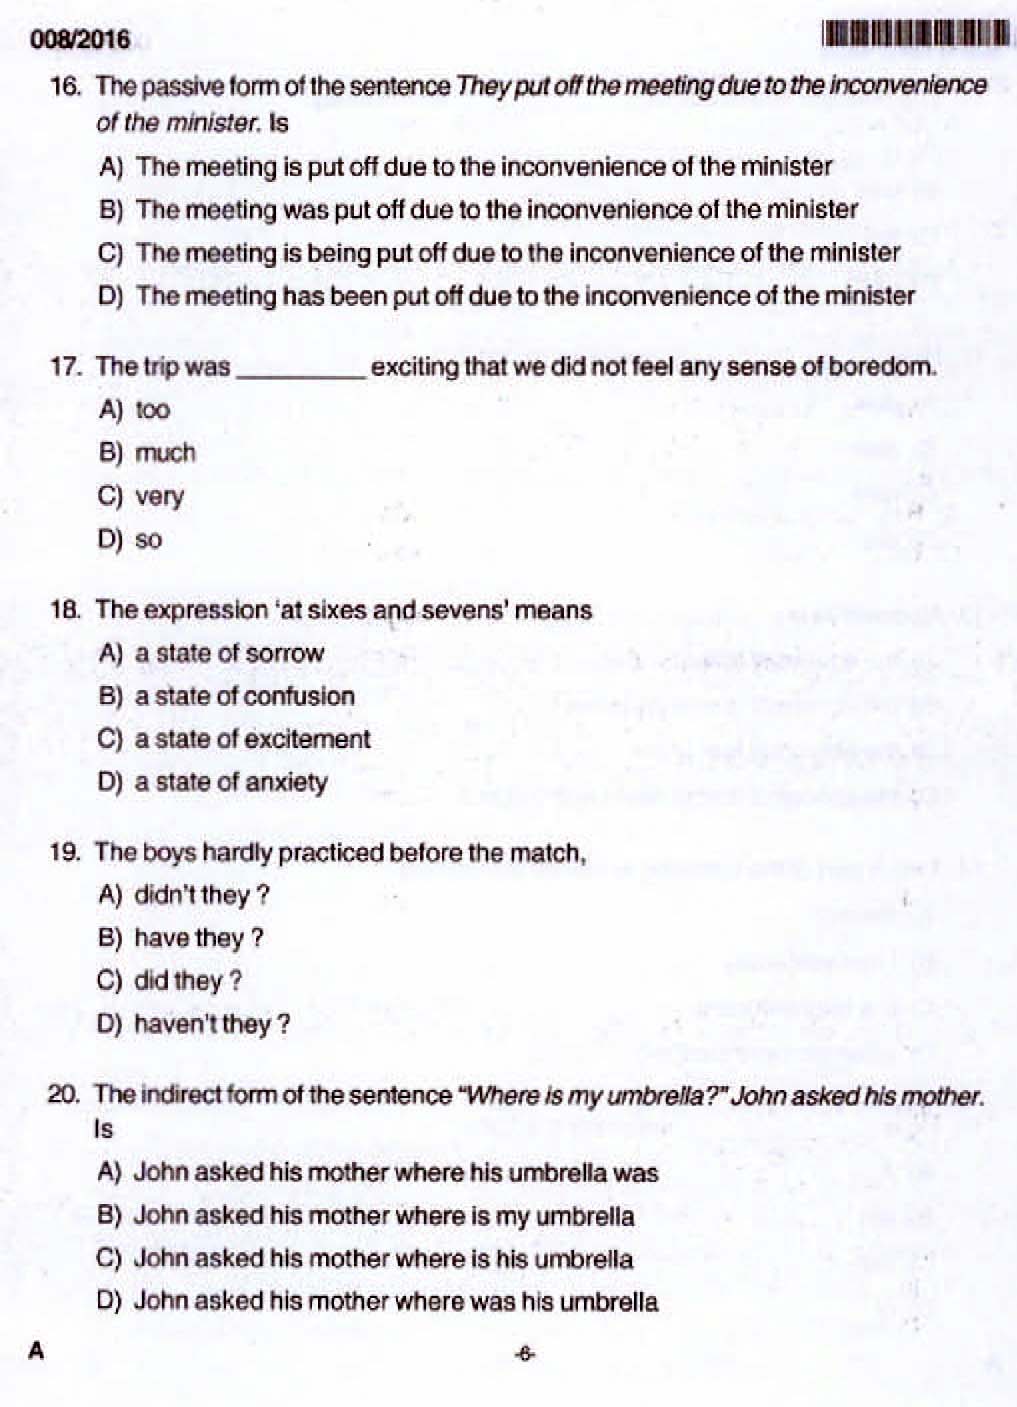 Kerala PSC Junior Assistant Exam 2016 Question Paper Code 0082016 4